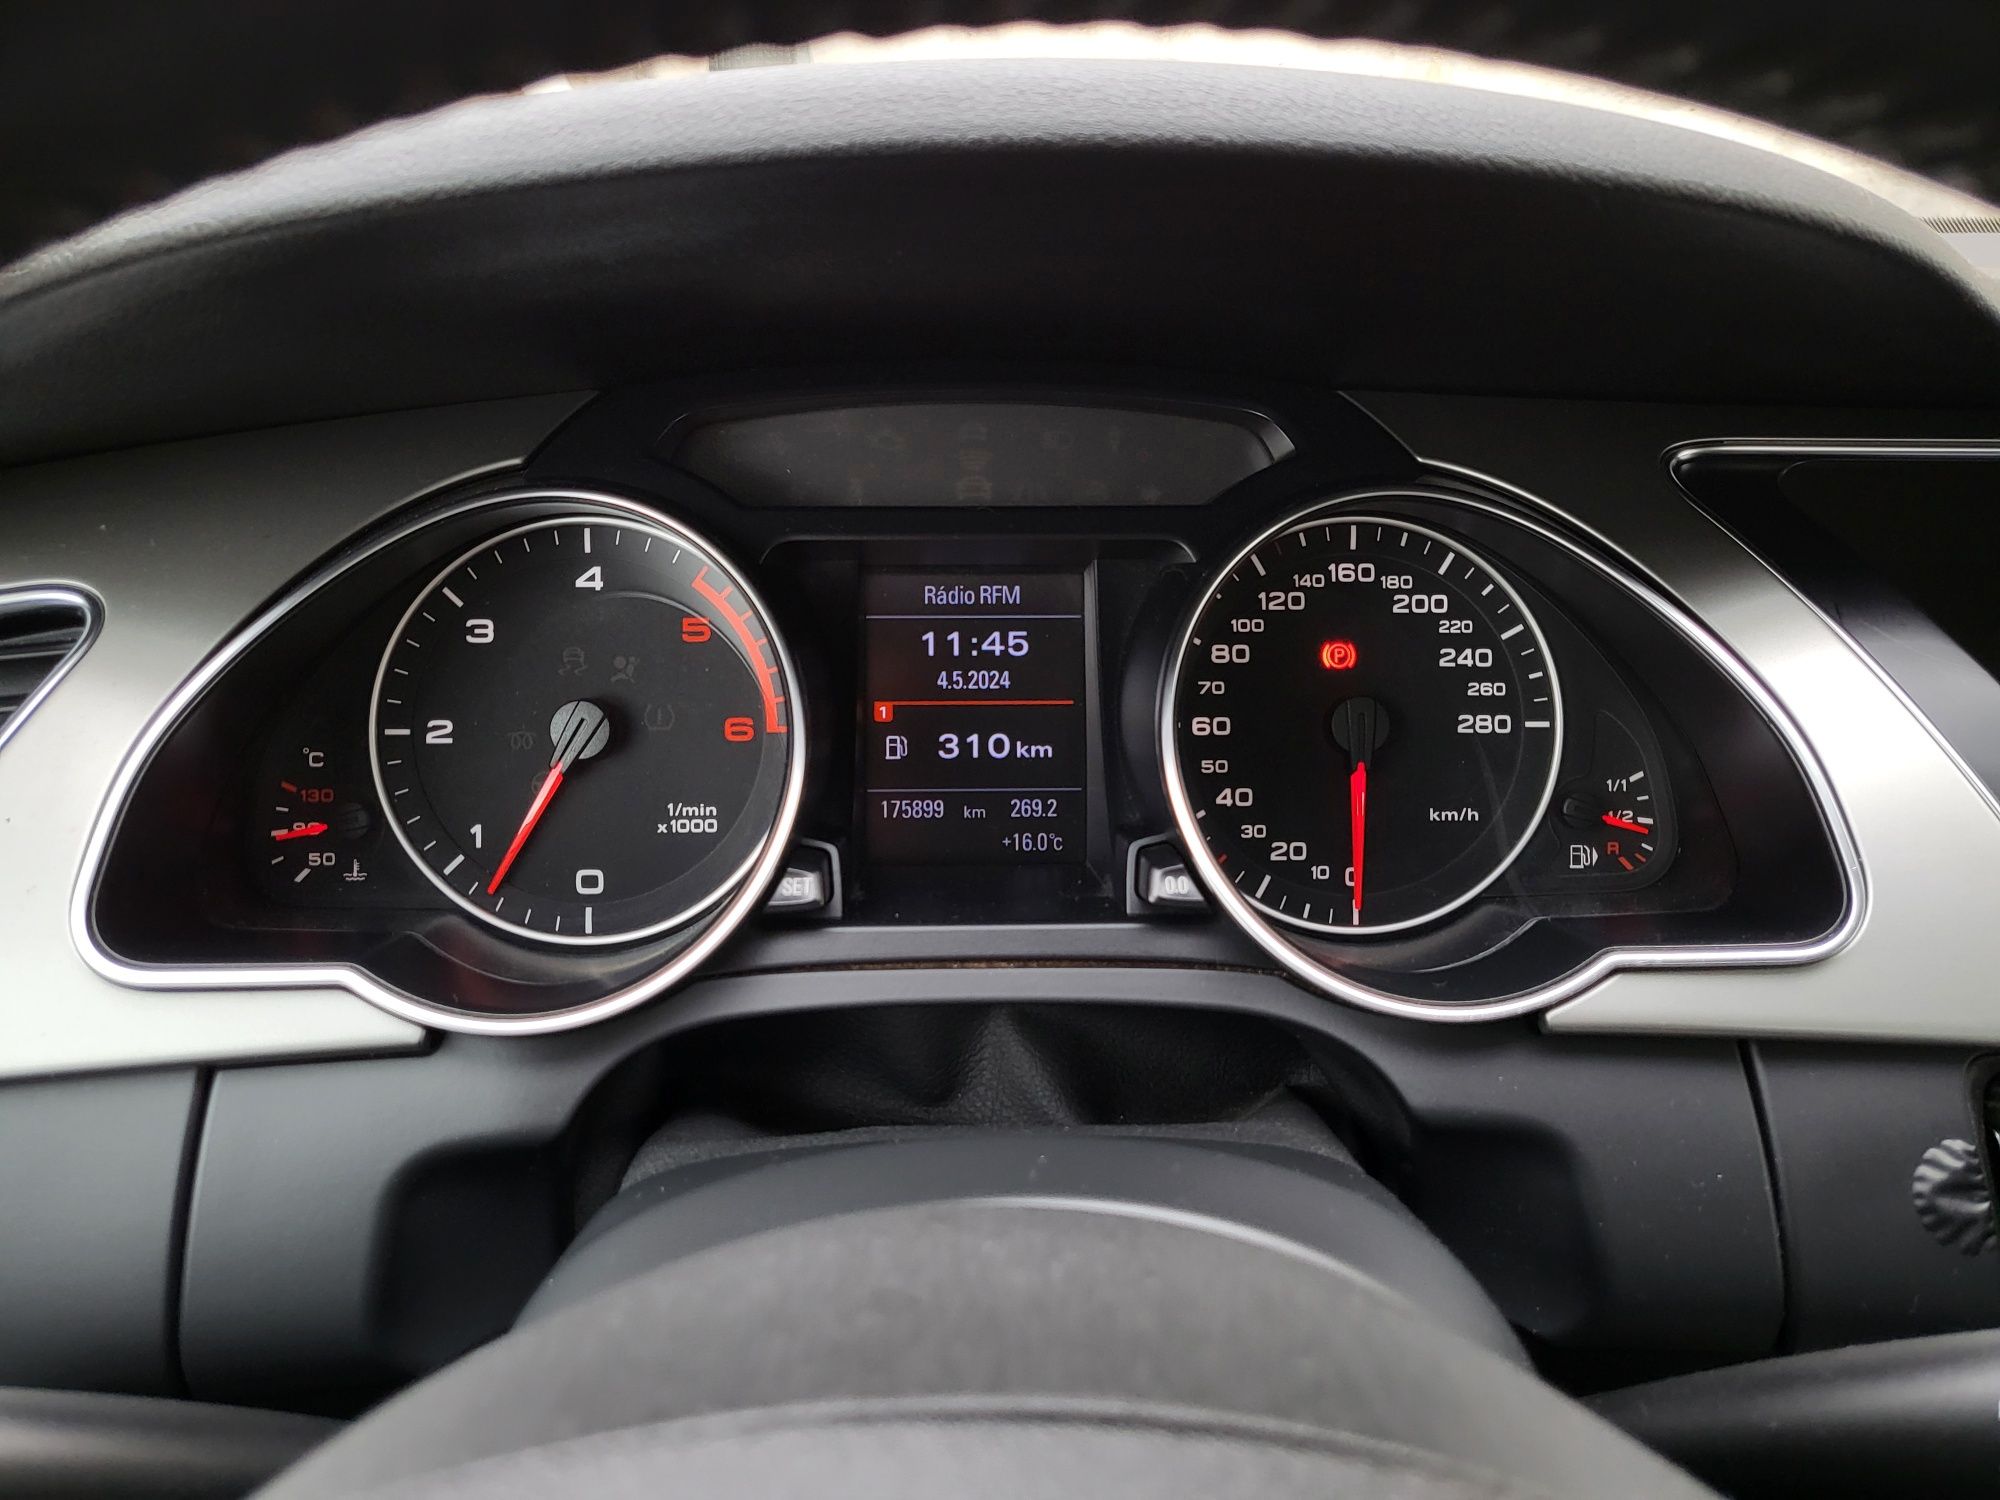 Audi A5 Coupé 3.0 Quattro